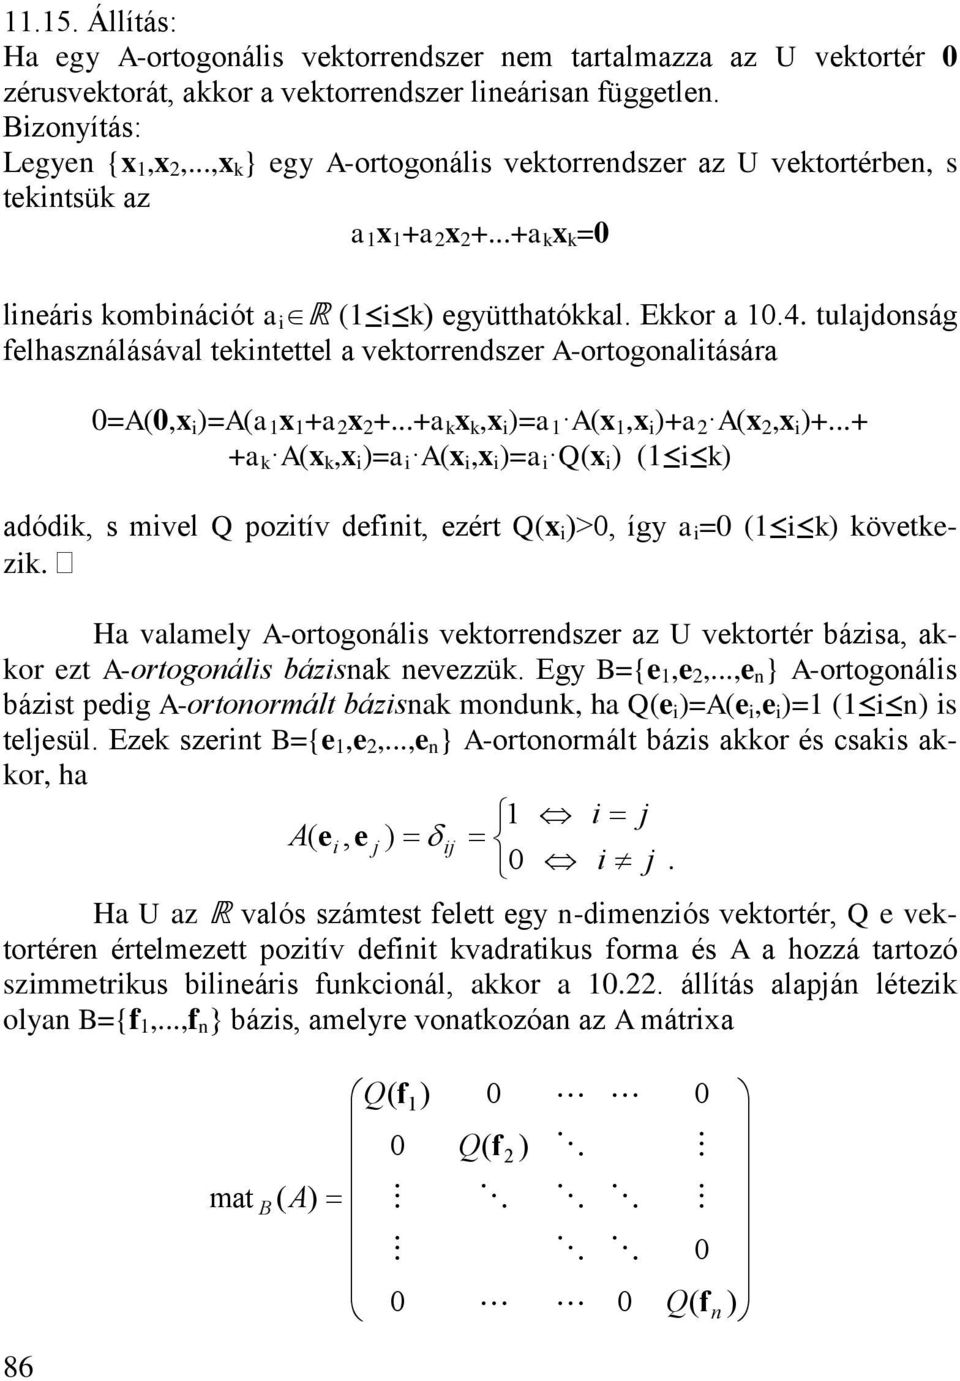 H vlmely -otogoáls vetoedsze z U vetoté bázs o ezt -otogoáls bázs evezzü. Egy B={e e...e } -otogoáls bázst pedg -otoomált bázs modu h e =e e = s teljesül. Eze szet B={e e.